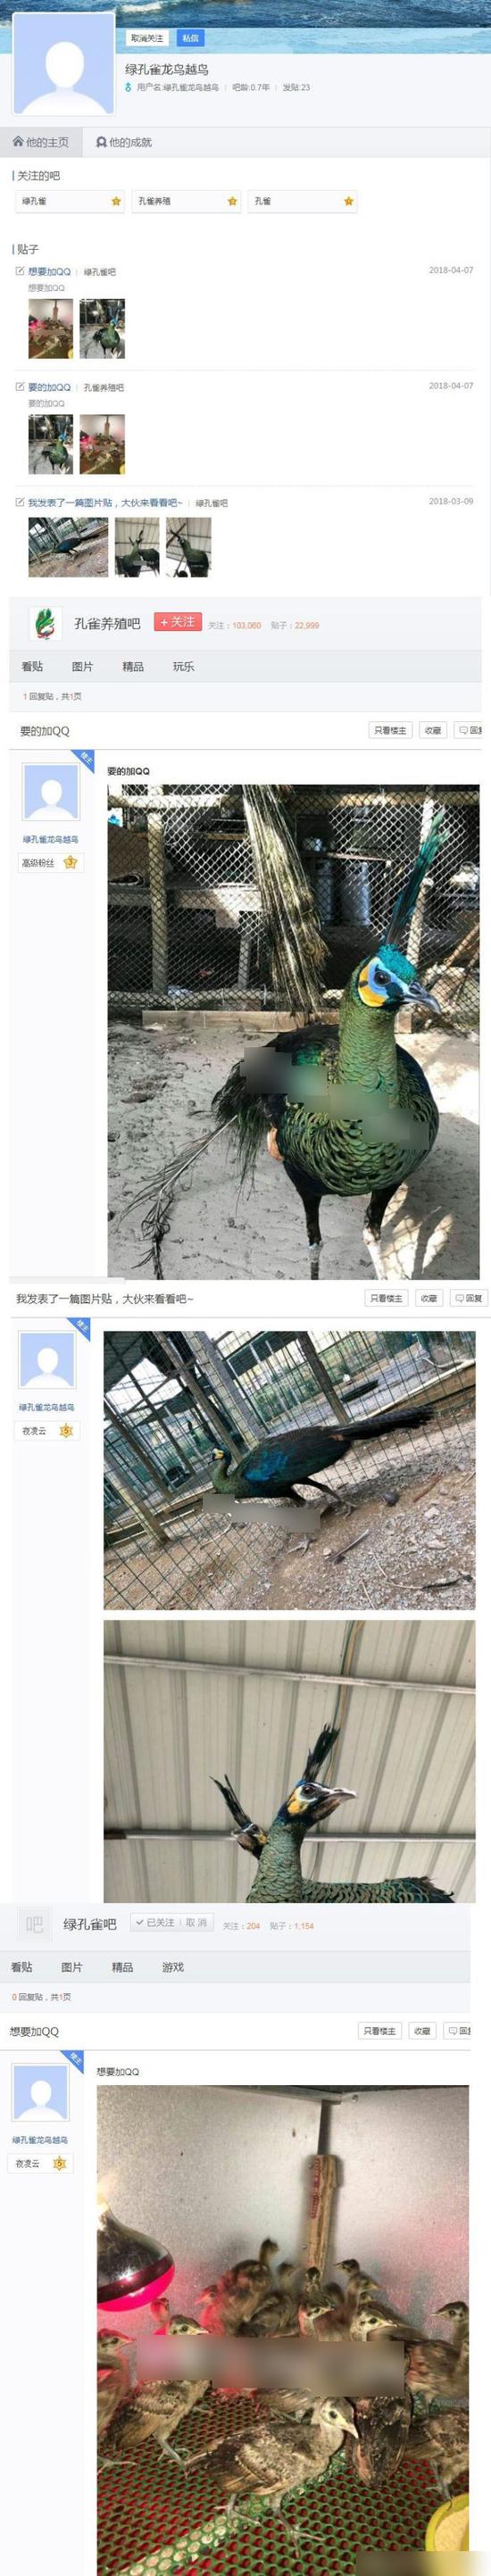 志愿者在微博上曝光的非法贩卖绿孔雀线索。